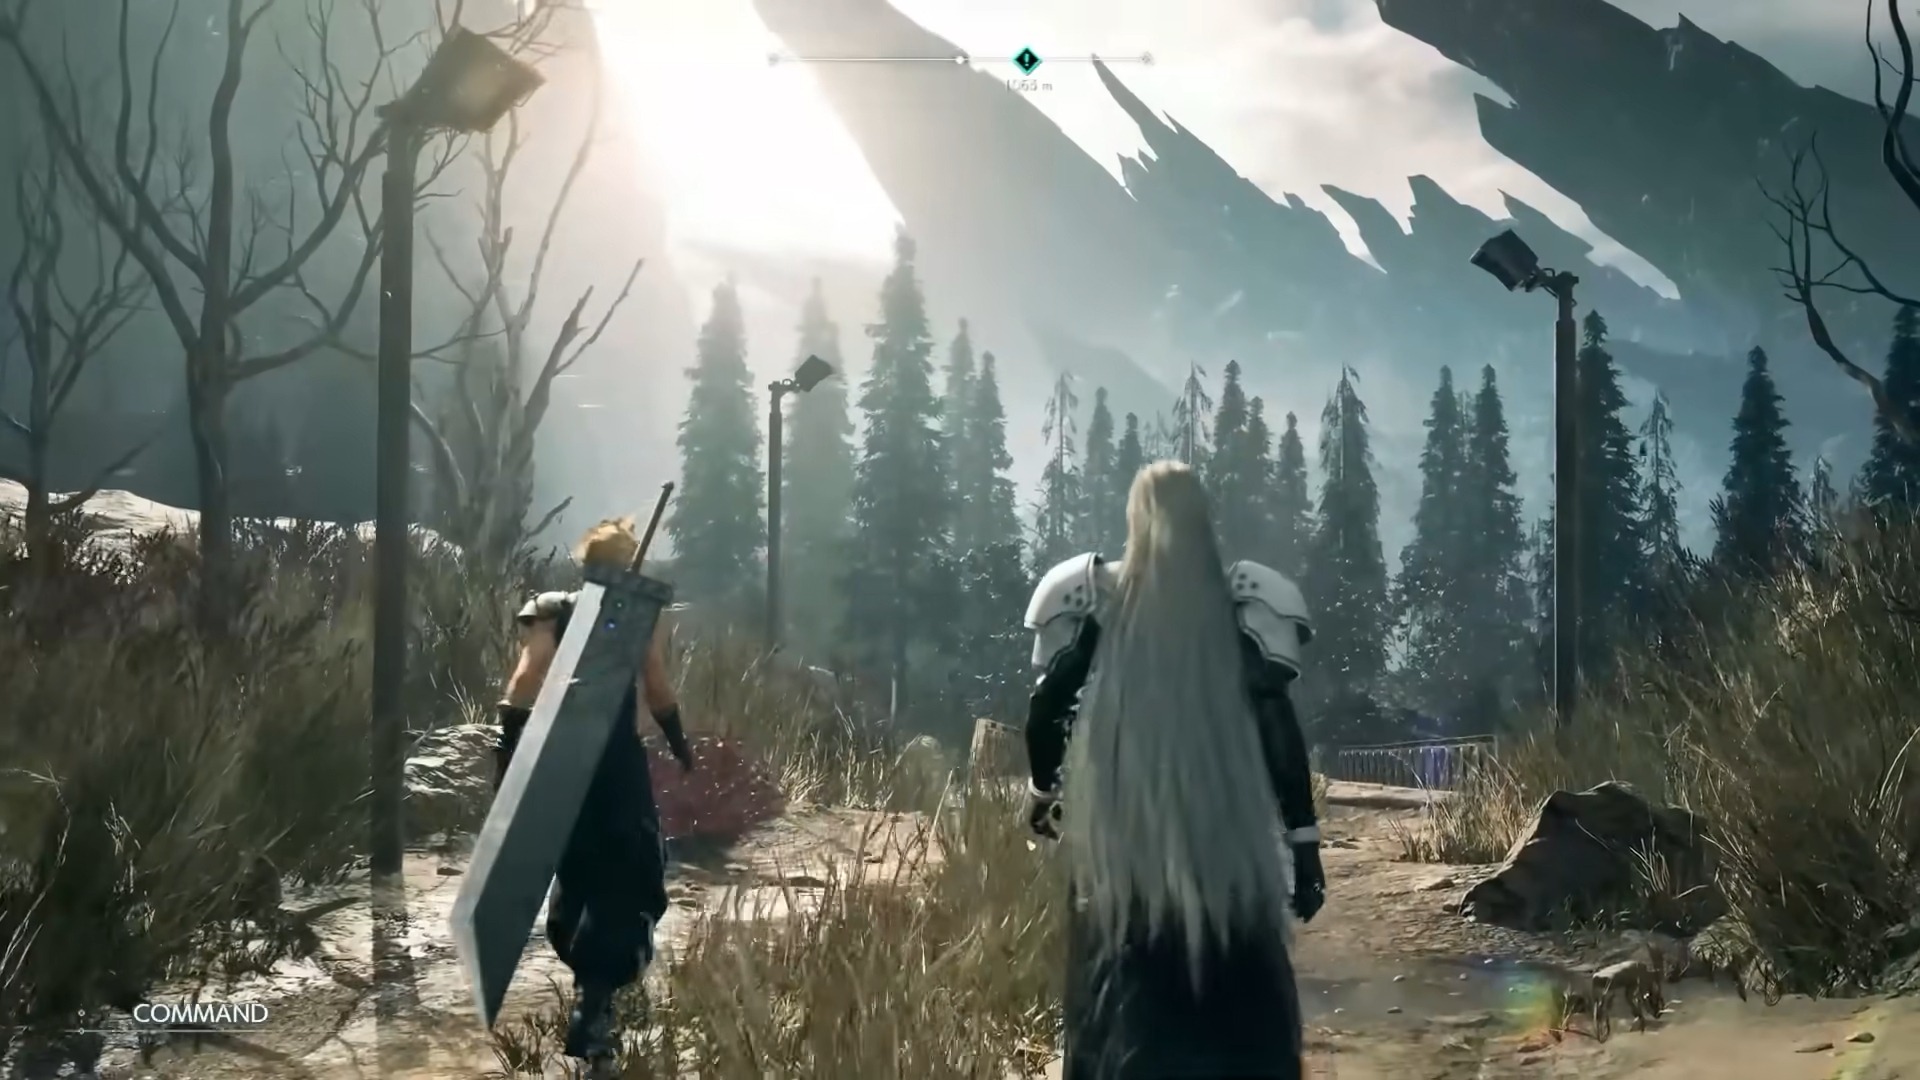 Captura de imagem mostra cena do primeiro trailer de Final Fantasy VII Rebirth, com o protagonista Cloud Strife e o vilão Sephiroth caminhando juntos, de costas para a câmera, em uma paisagem desértica